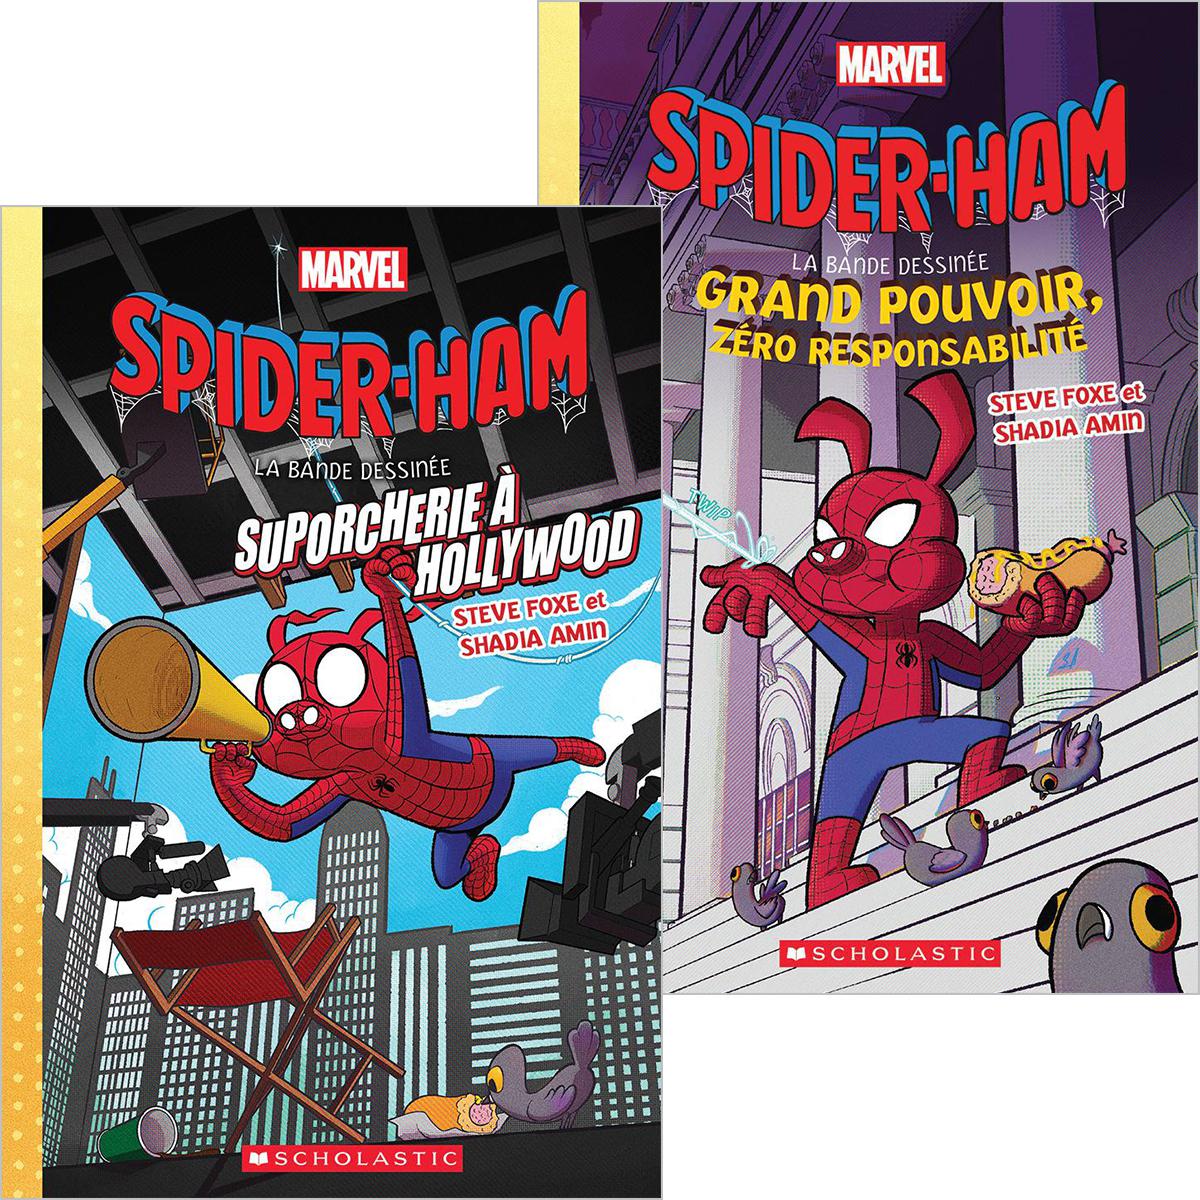  Duo Marvel Spider-Ham 